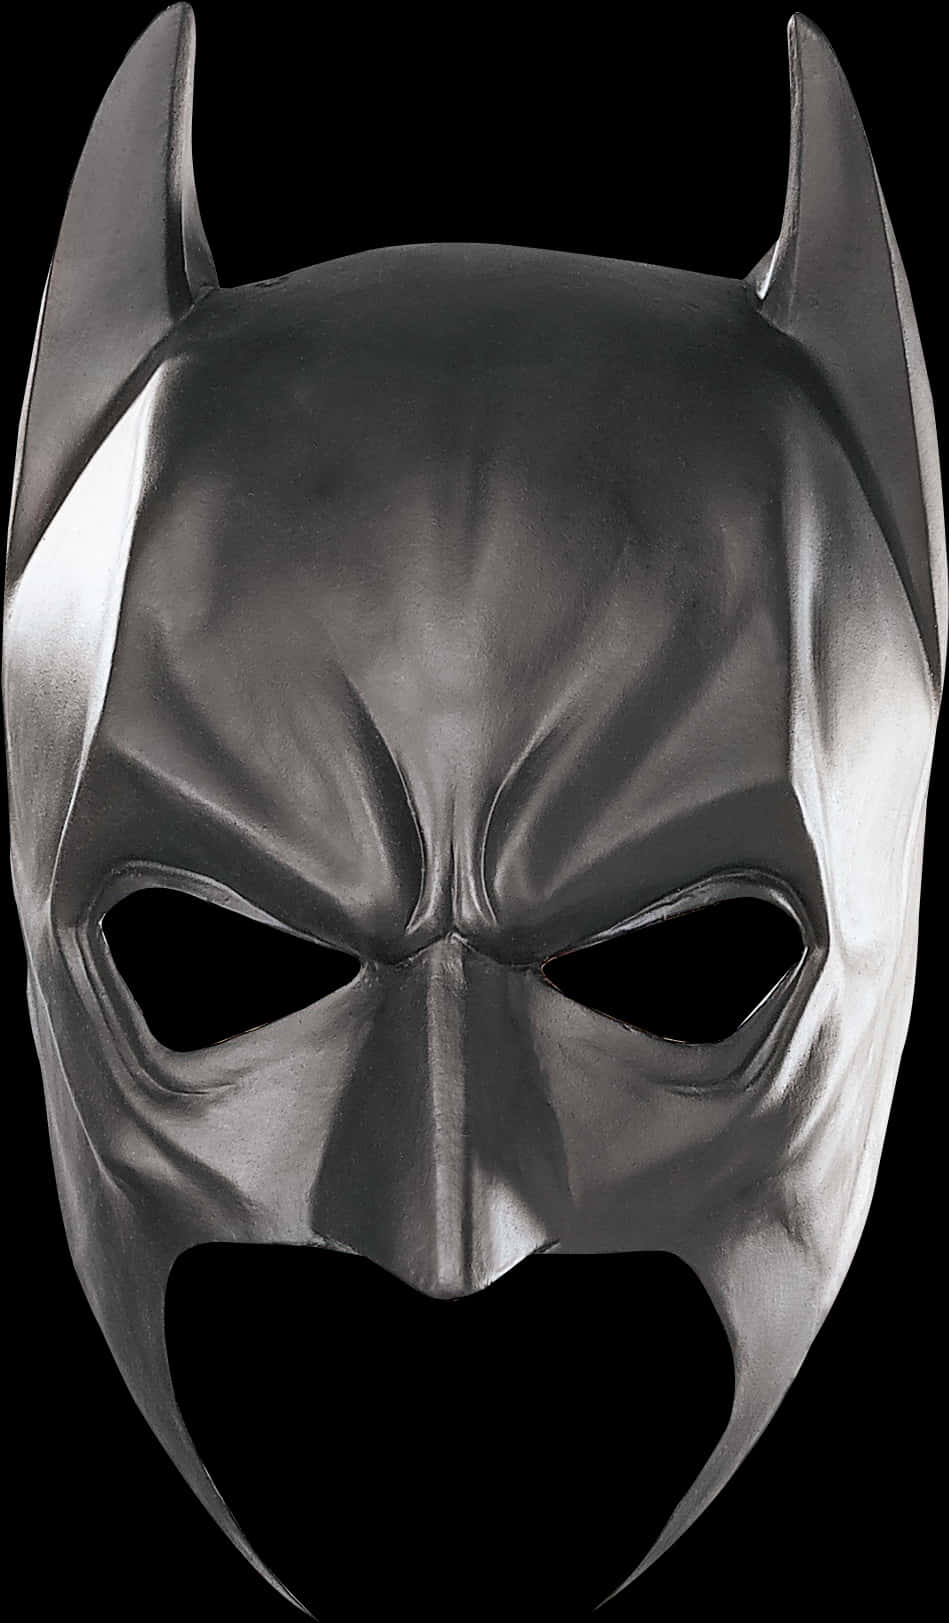 A Mask Of A Batman